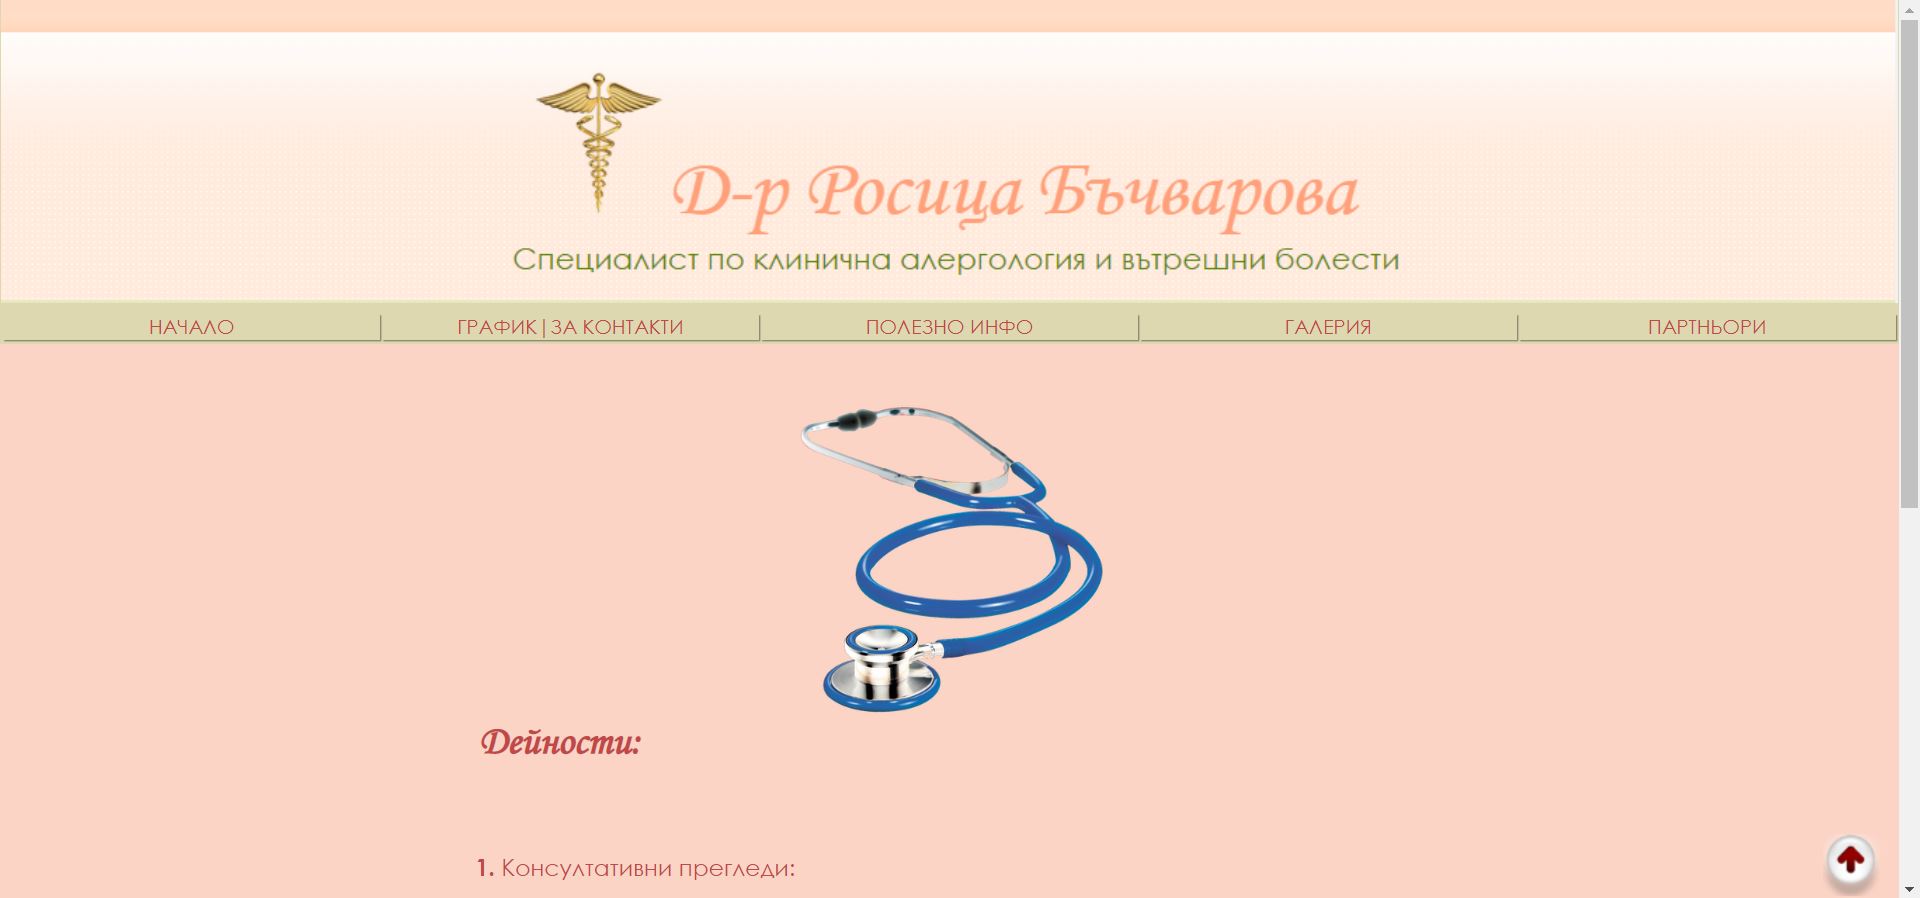 Д-р Росица Бъчварова